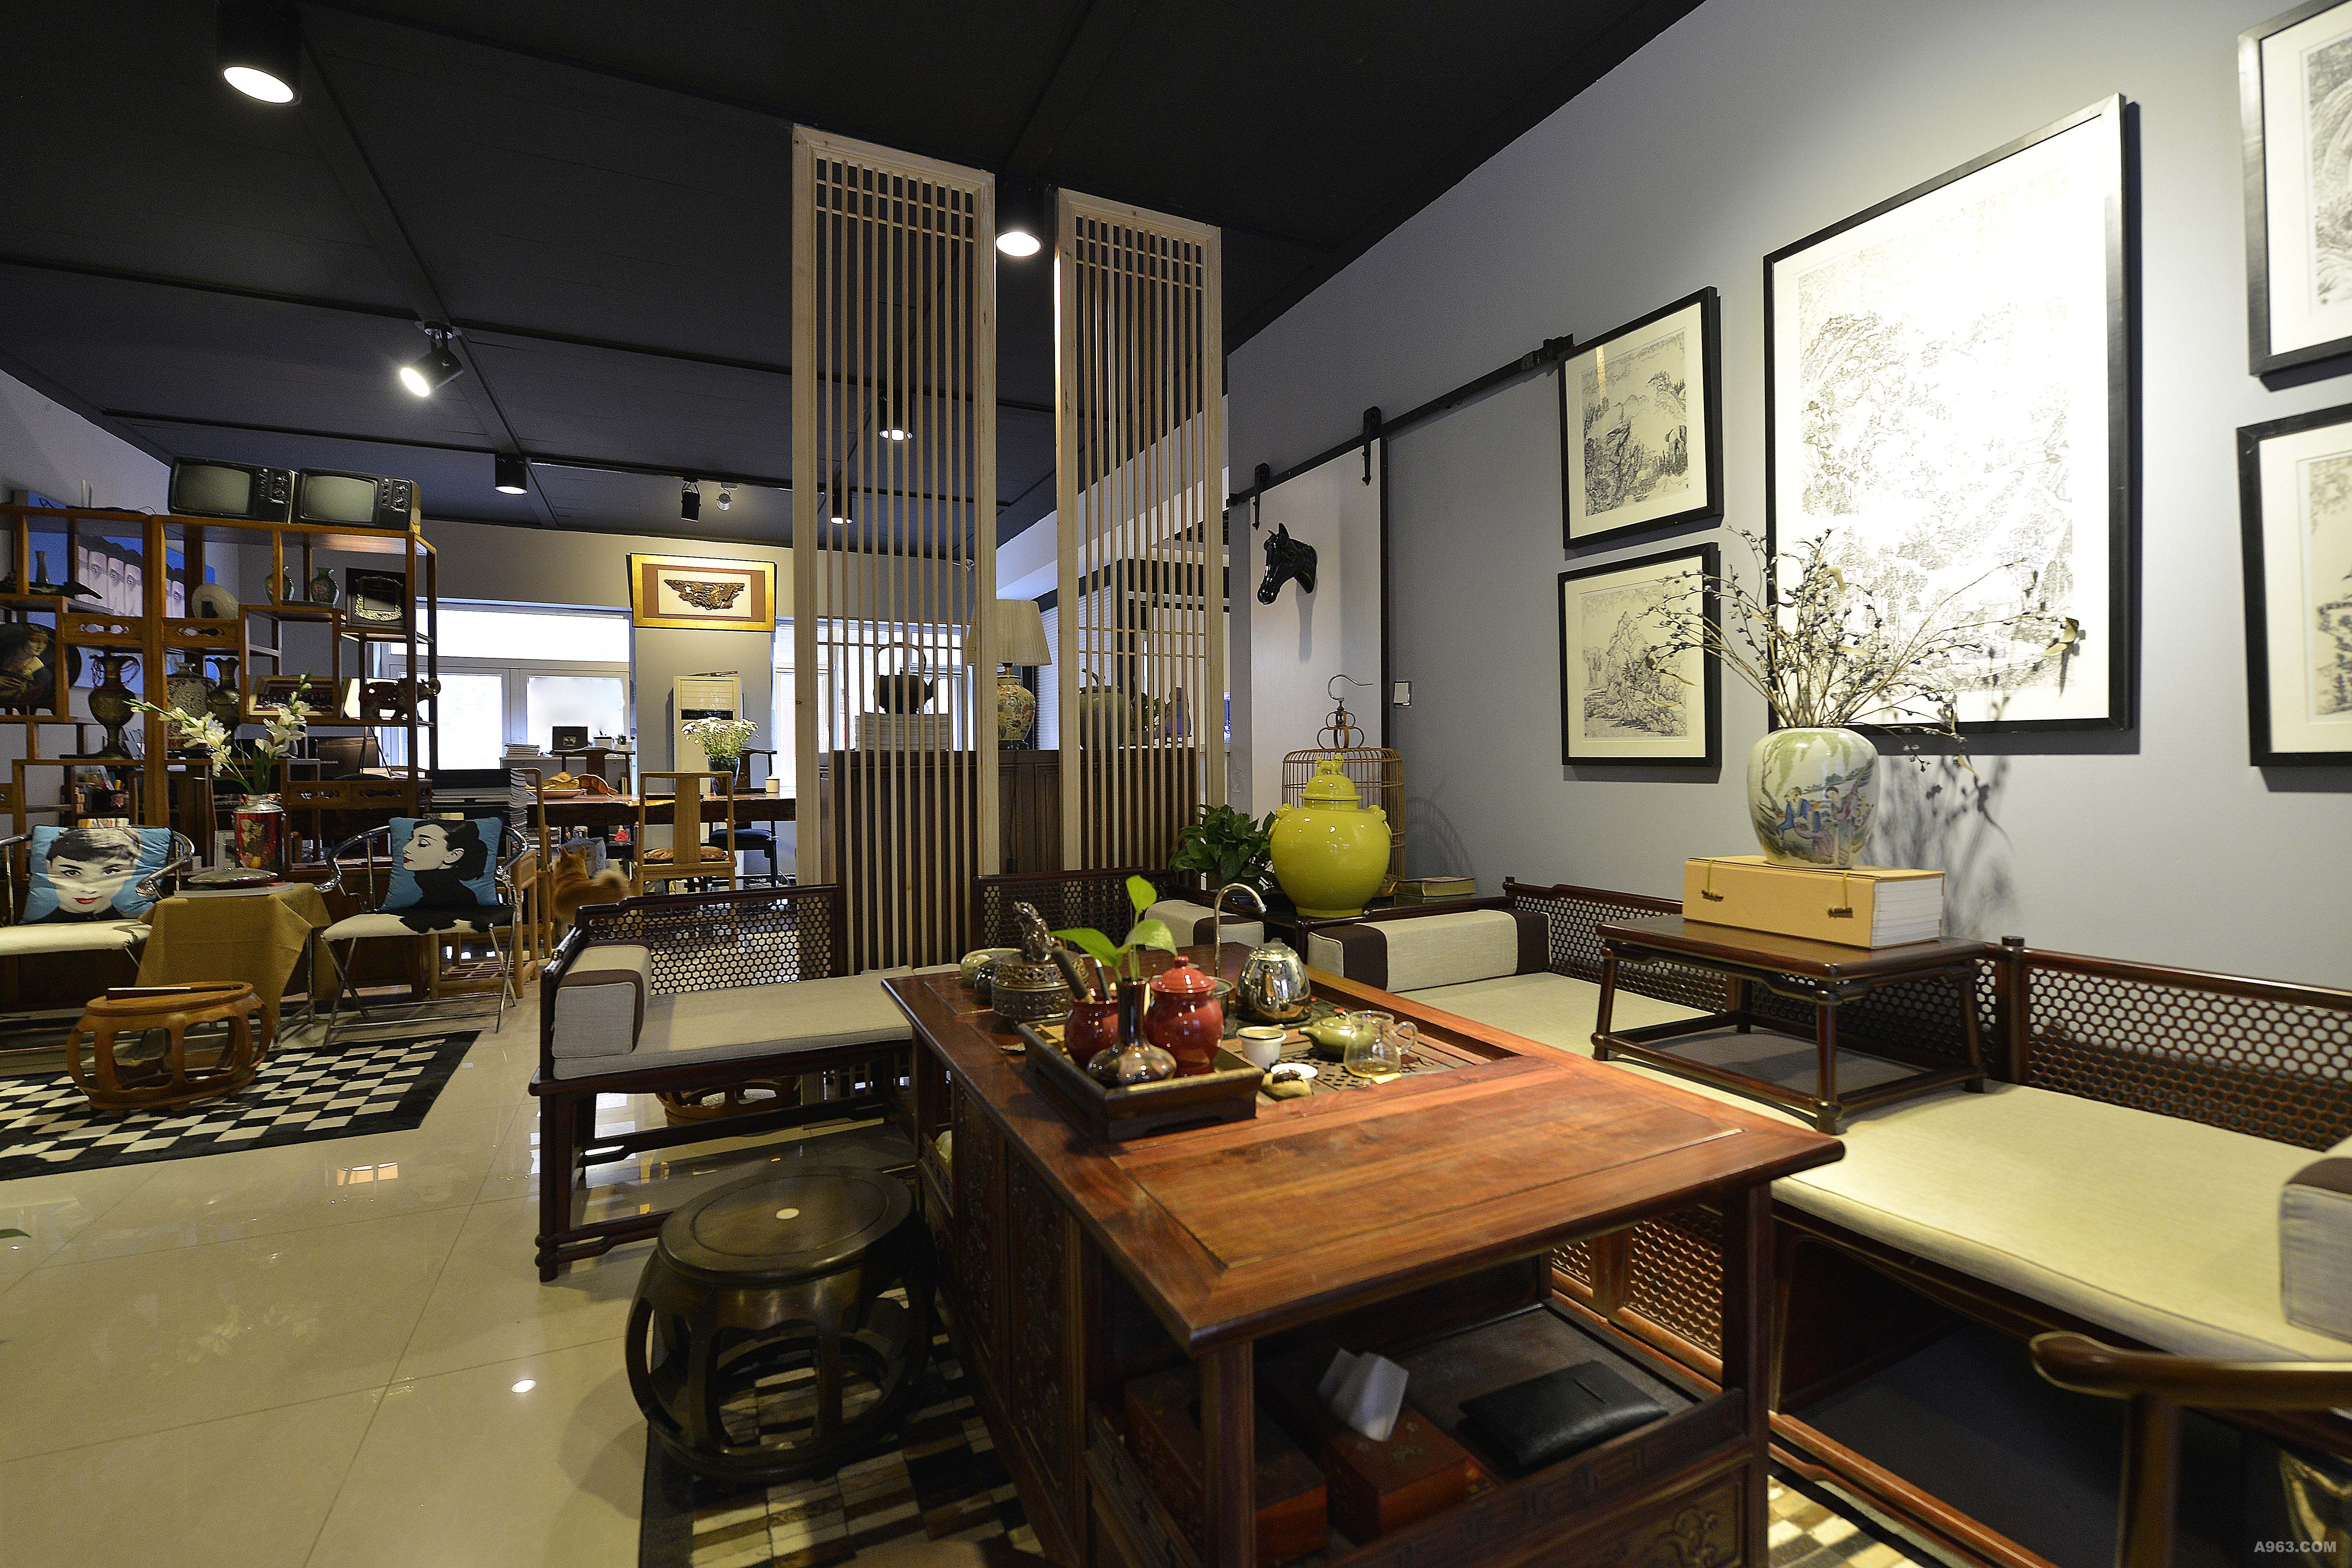 这是一个喝茶和会客的接待区，茶桌和中式家具是采用明代制式，简练的线条没有过多的繁琐的装饰。空间陈设上有很多古董，就看你的慧眼识不识货。